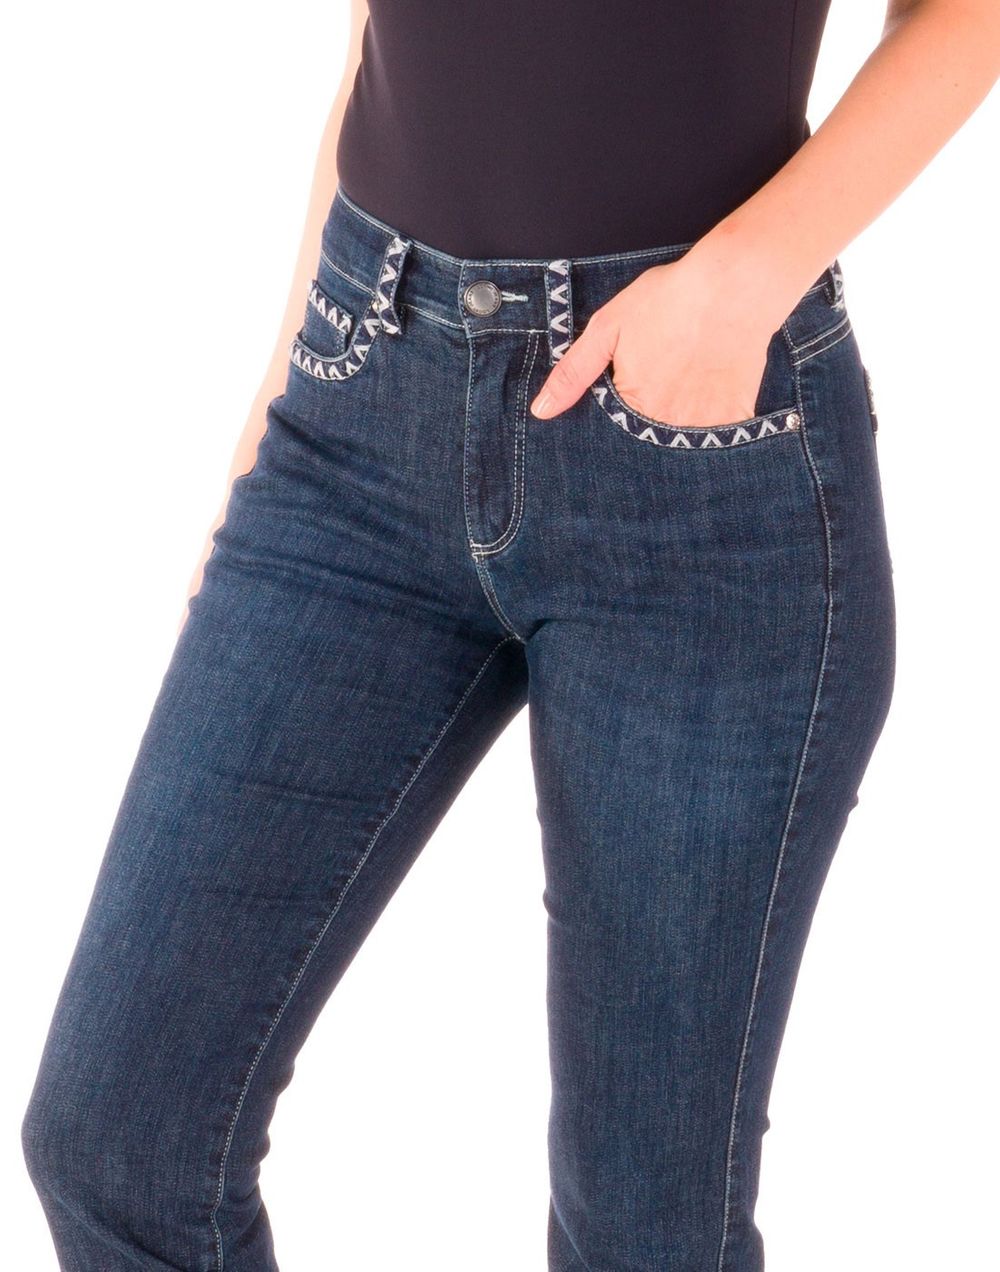 bordado em calça jeans